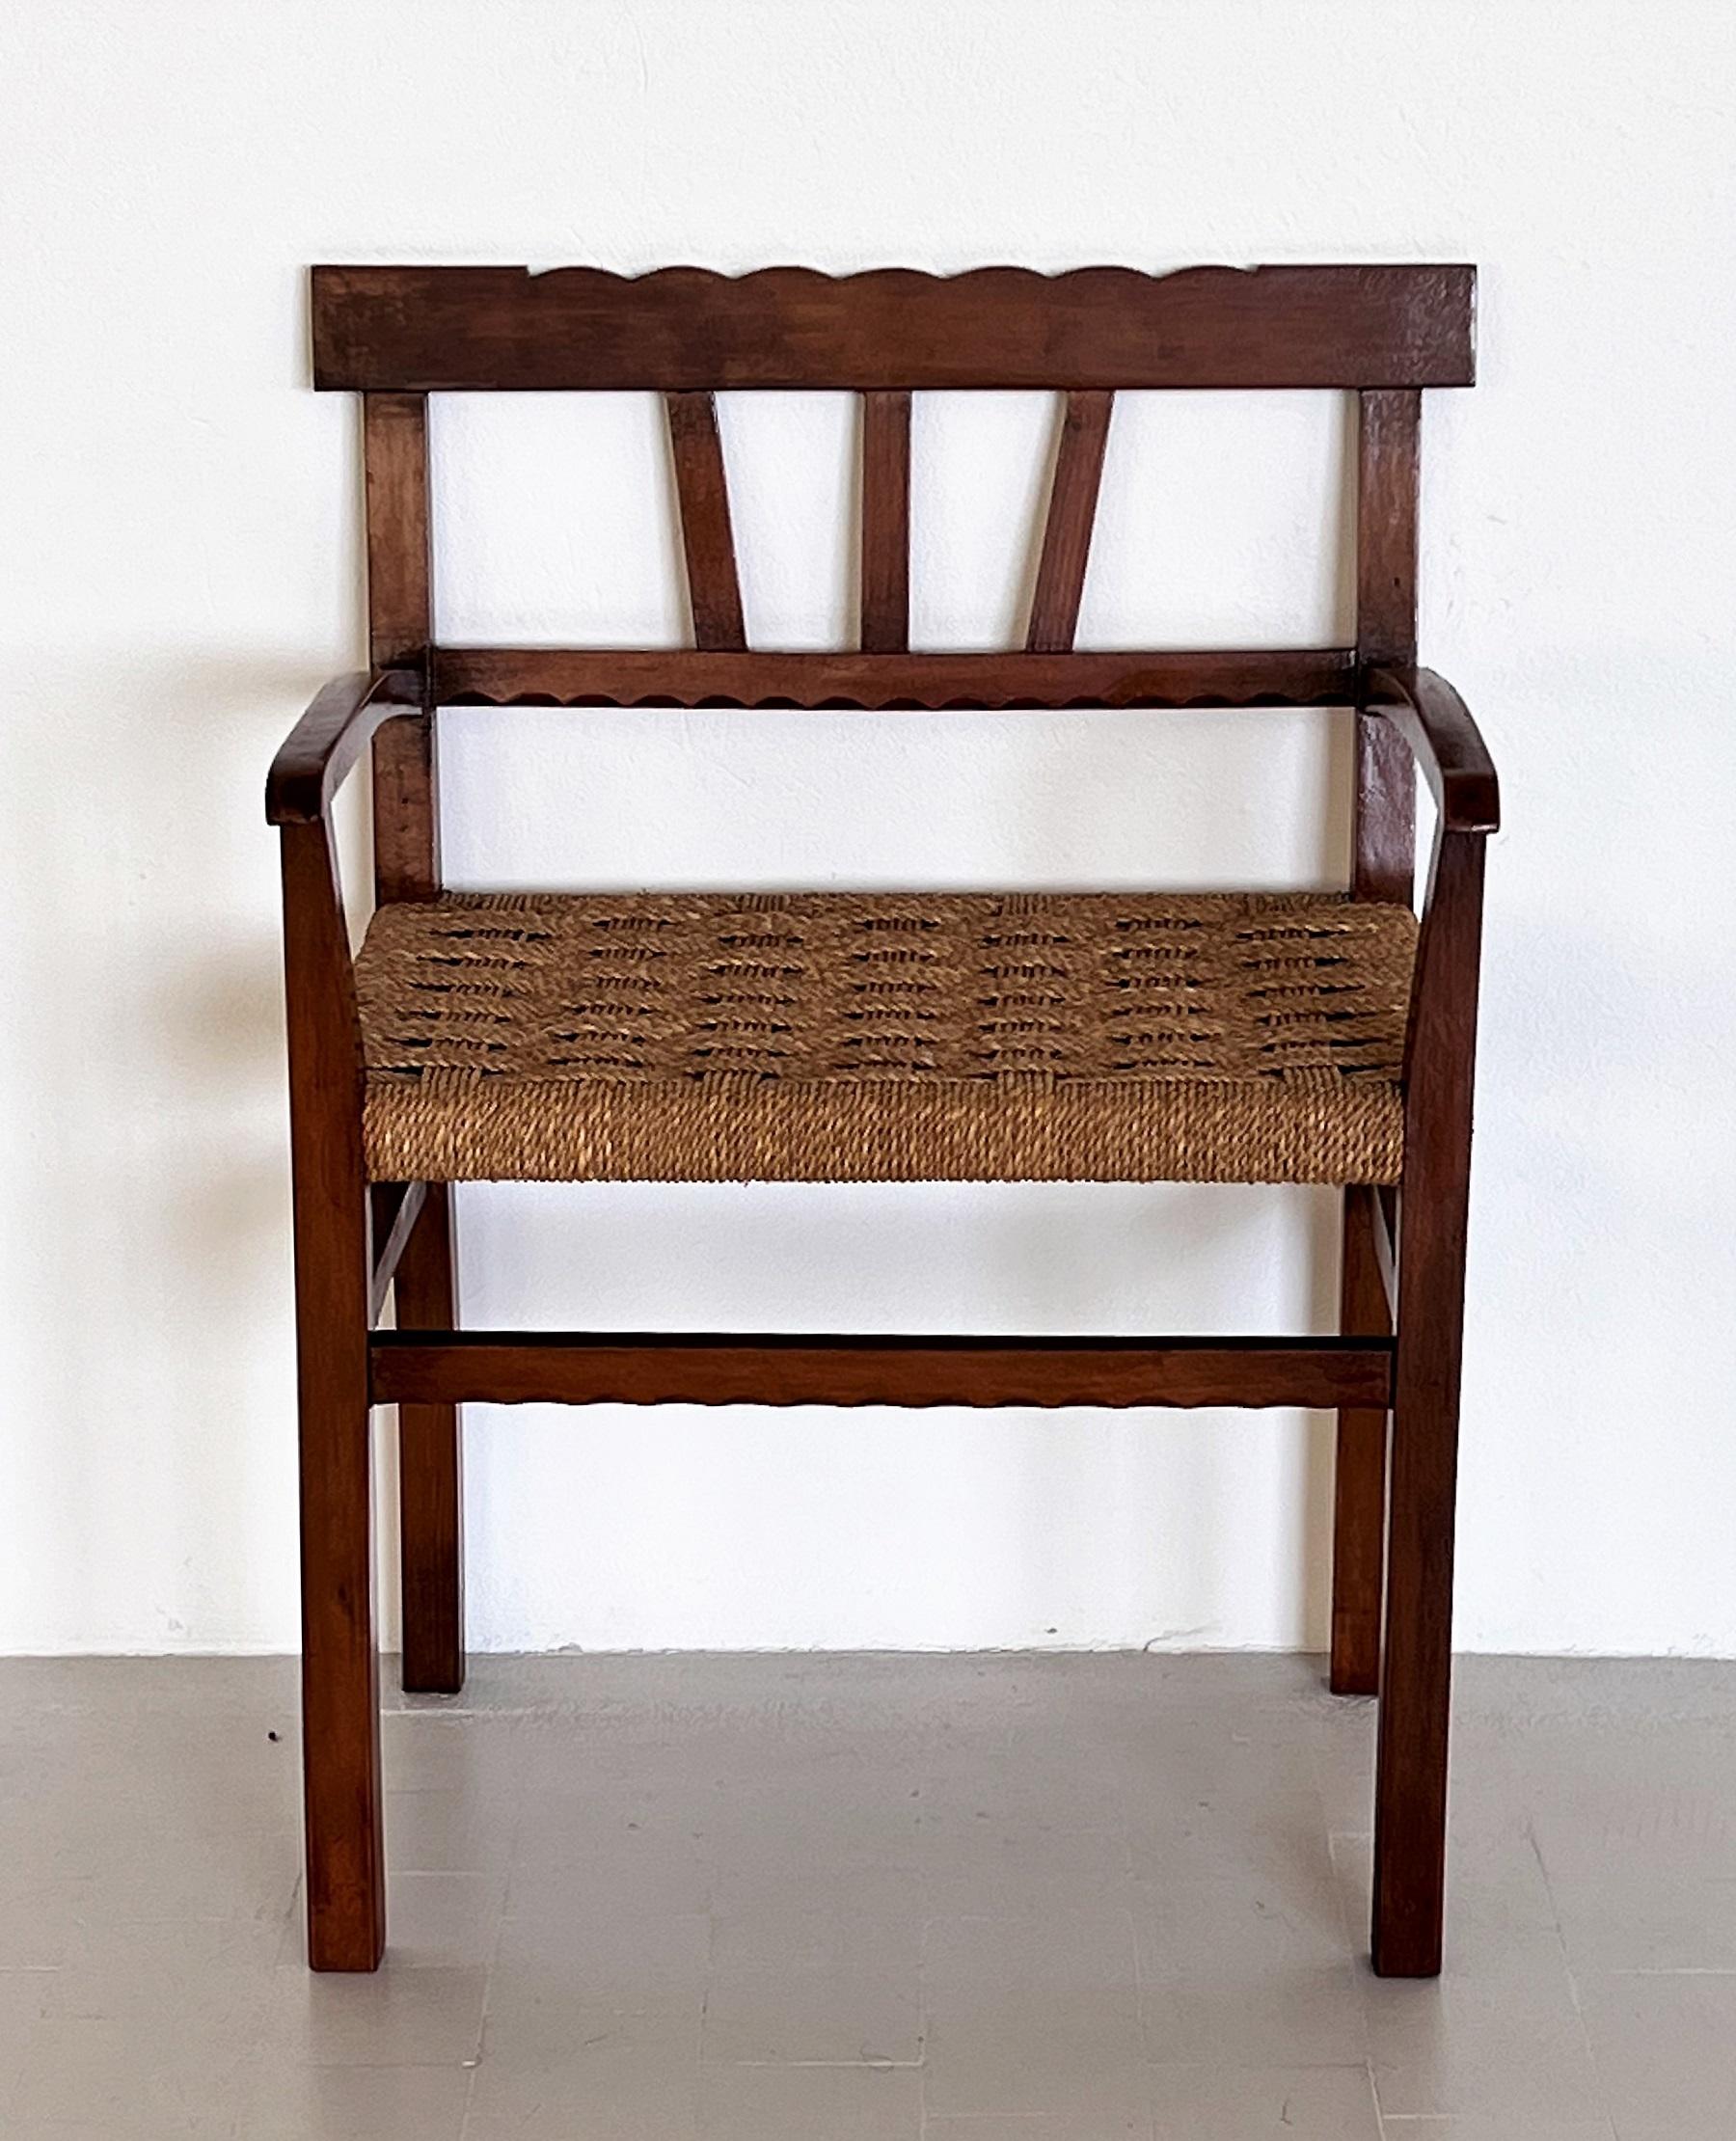 Schöner Beistellstuhl aus gefärbtem Buchenholz mit handgeflochtener Sitzfläche aus kräftigem Cord.
Hergestellt in Italien in den 1980er Jahren.
Der Beistellstuhl ist recht breit, was ihn sehr bequem macht. Außerdem kann er sehr gut als